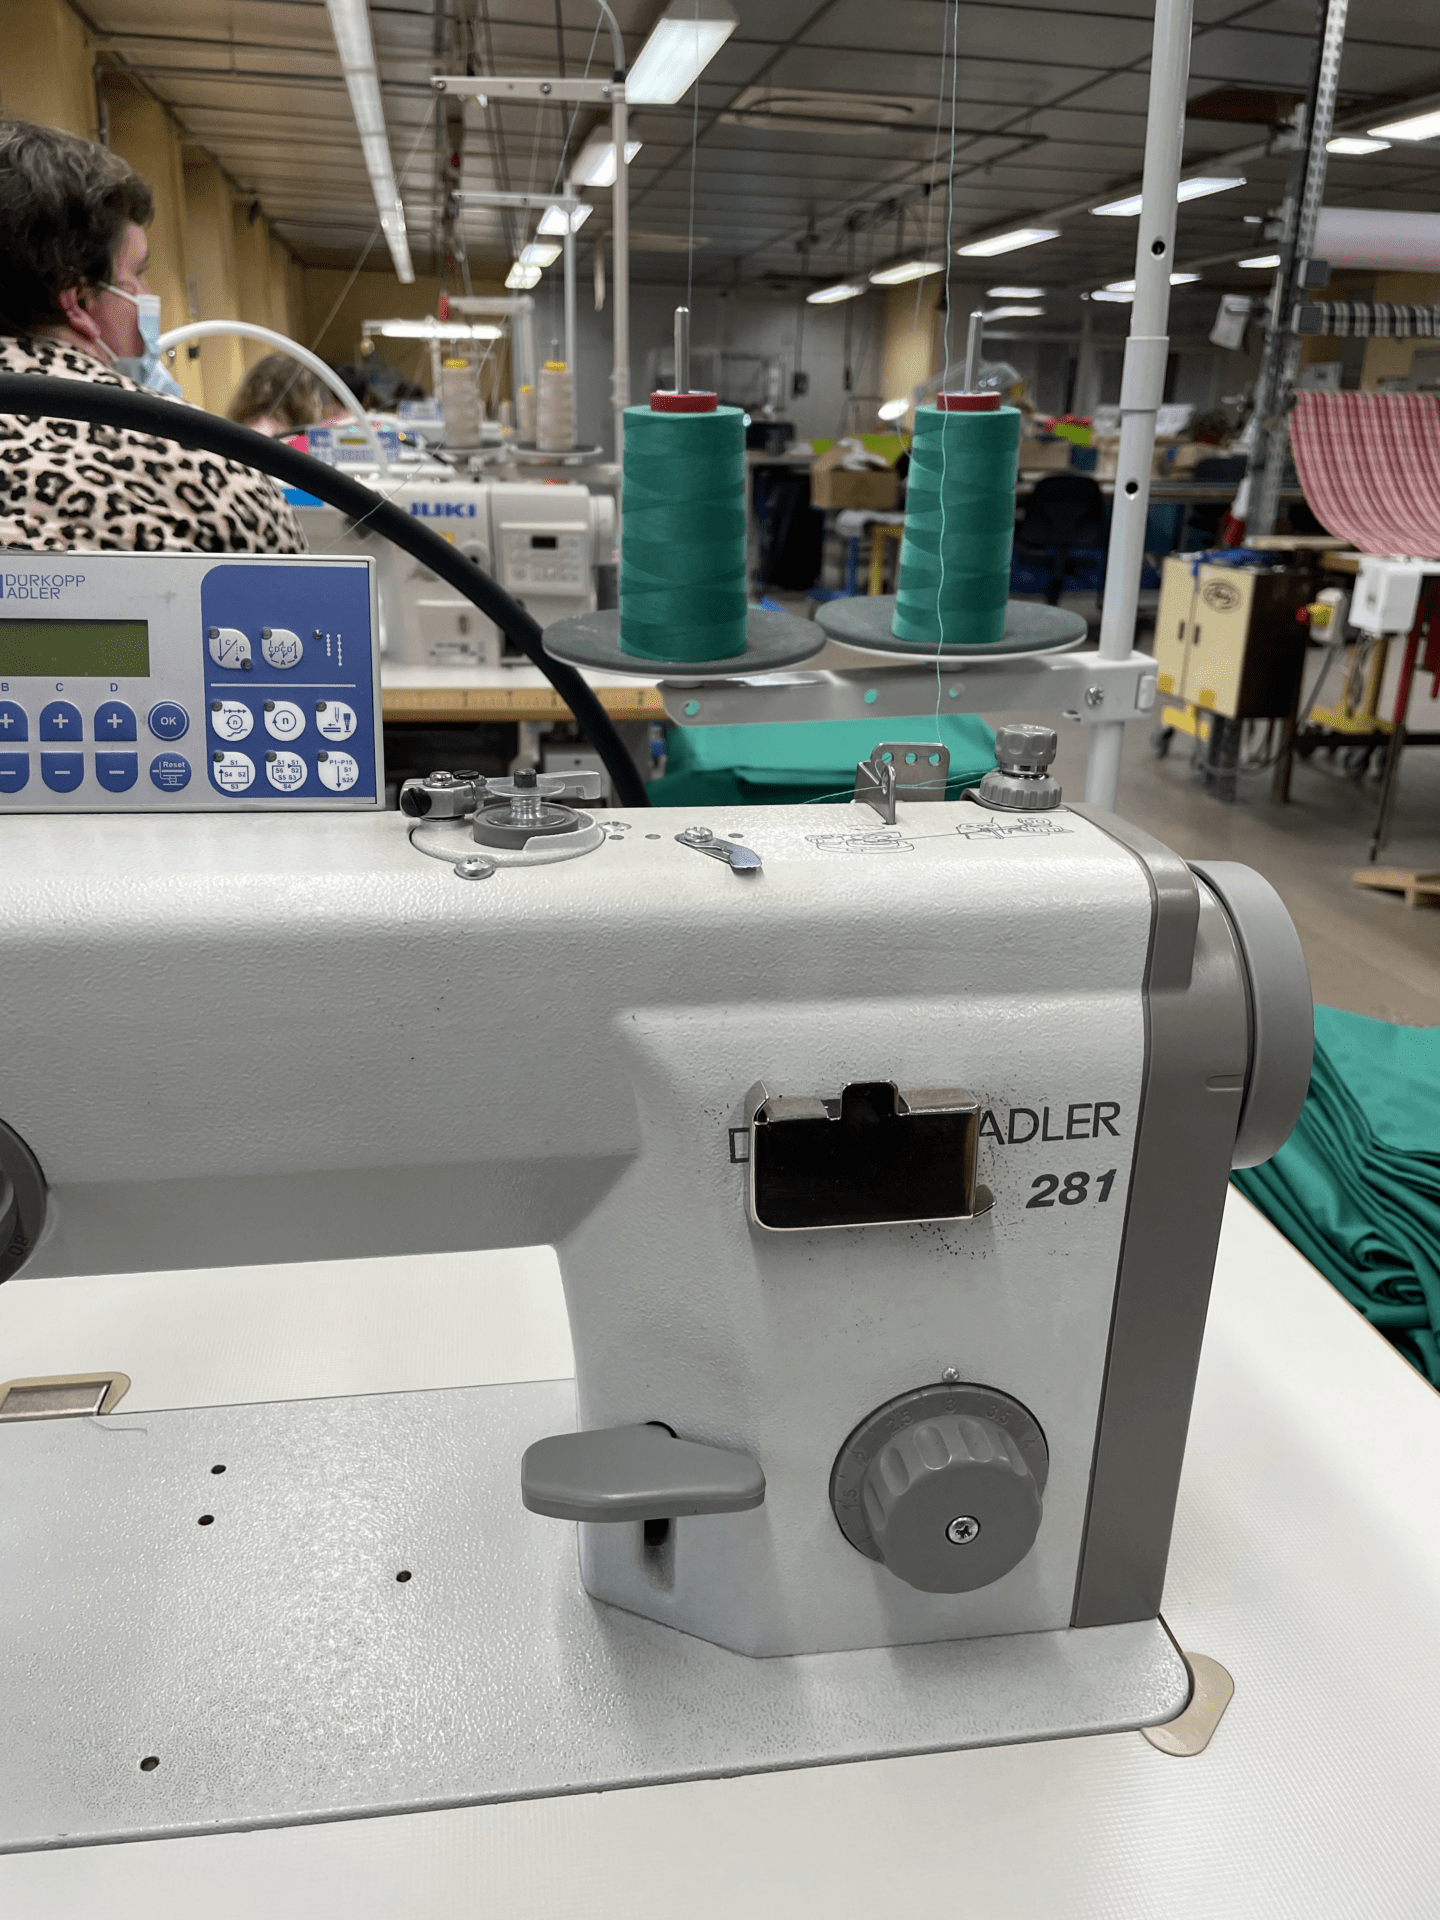 Équipement Atelier Couture : machines à coudre industrielles